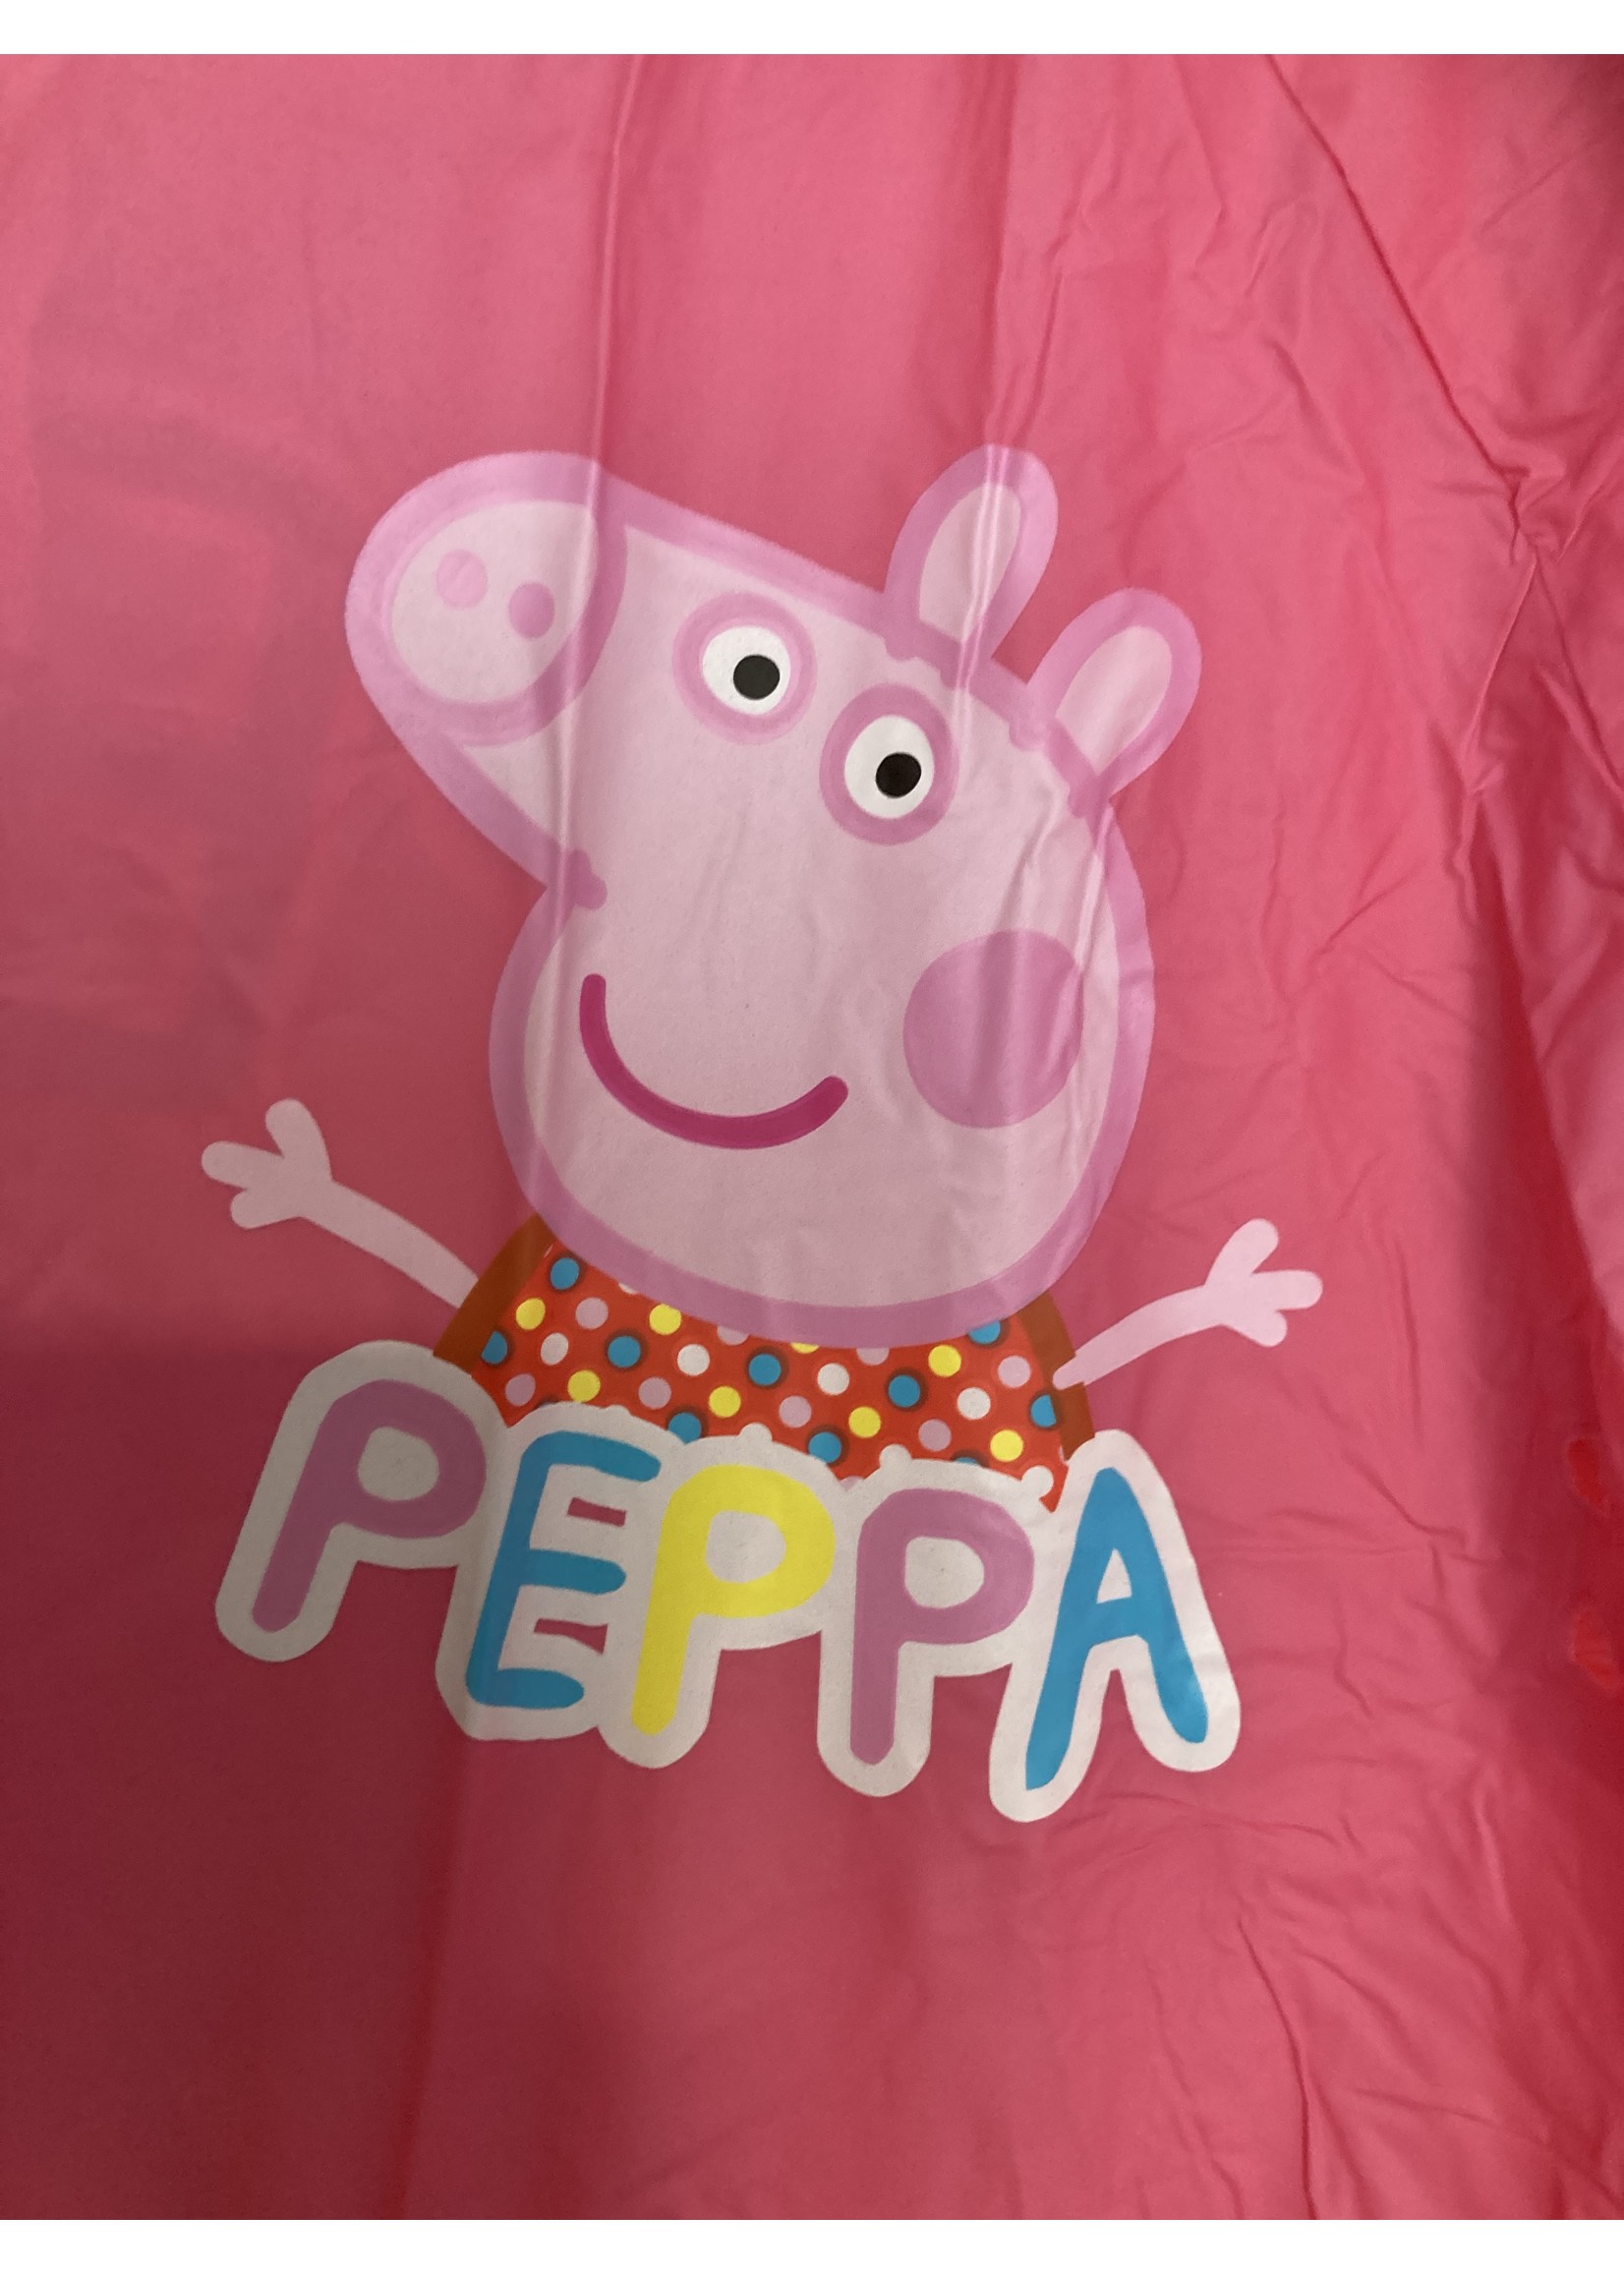 Peppa Pig  Peppa Pig raincoat from Peppa Pig pink